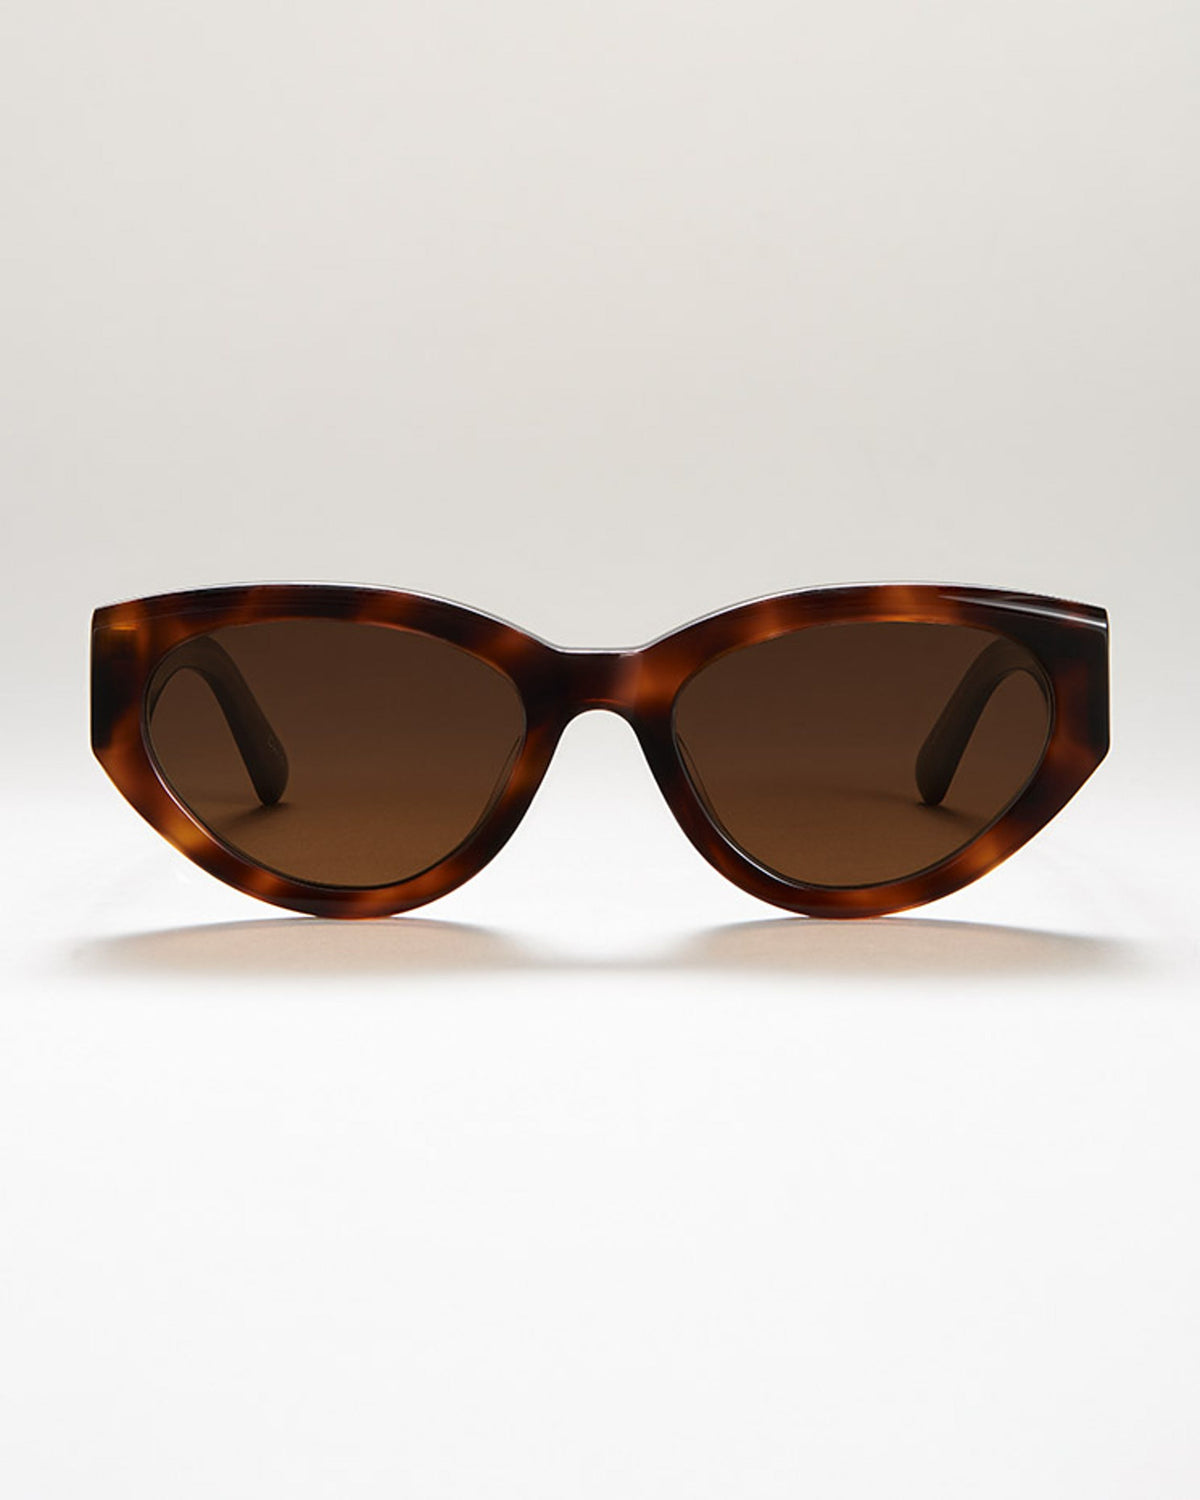 Tortoishell cat eye sunglasses